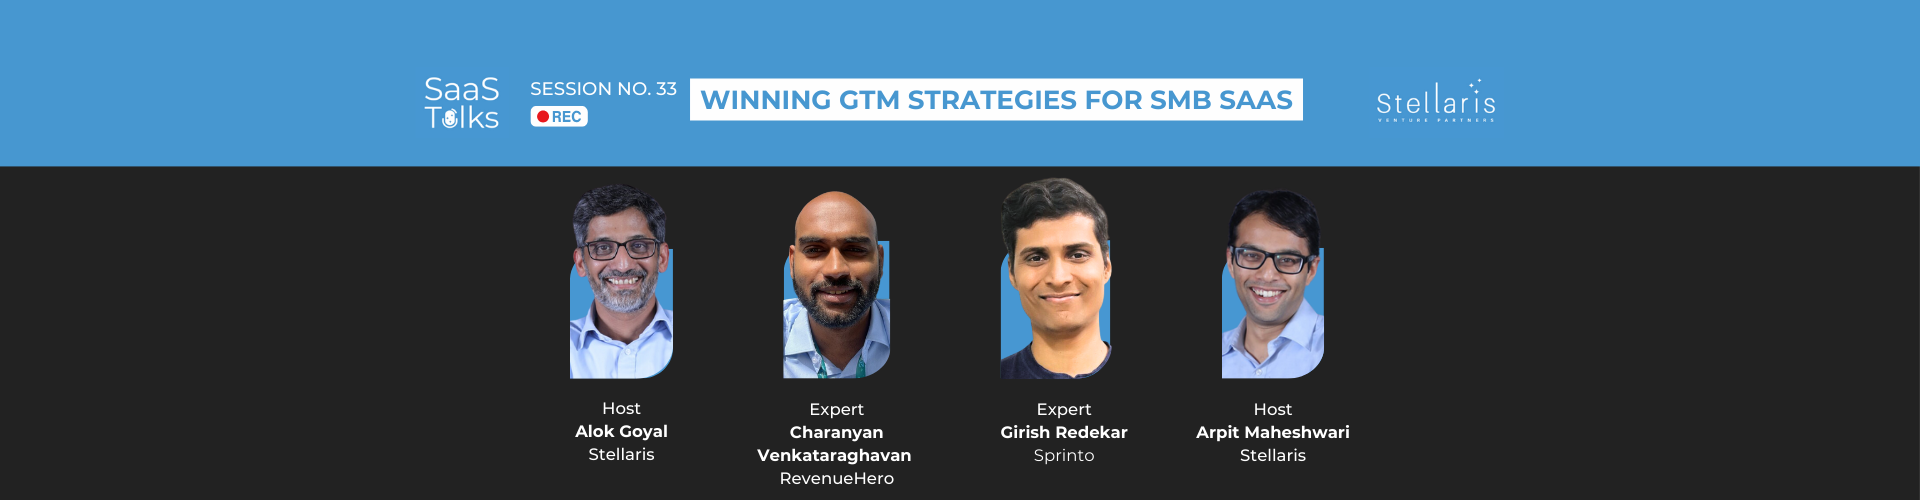 SaaS Talks #33: Winning GTM Strategies for SMB SaaS